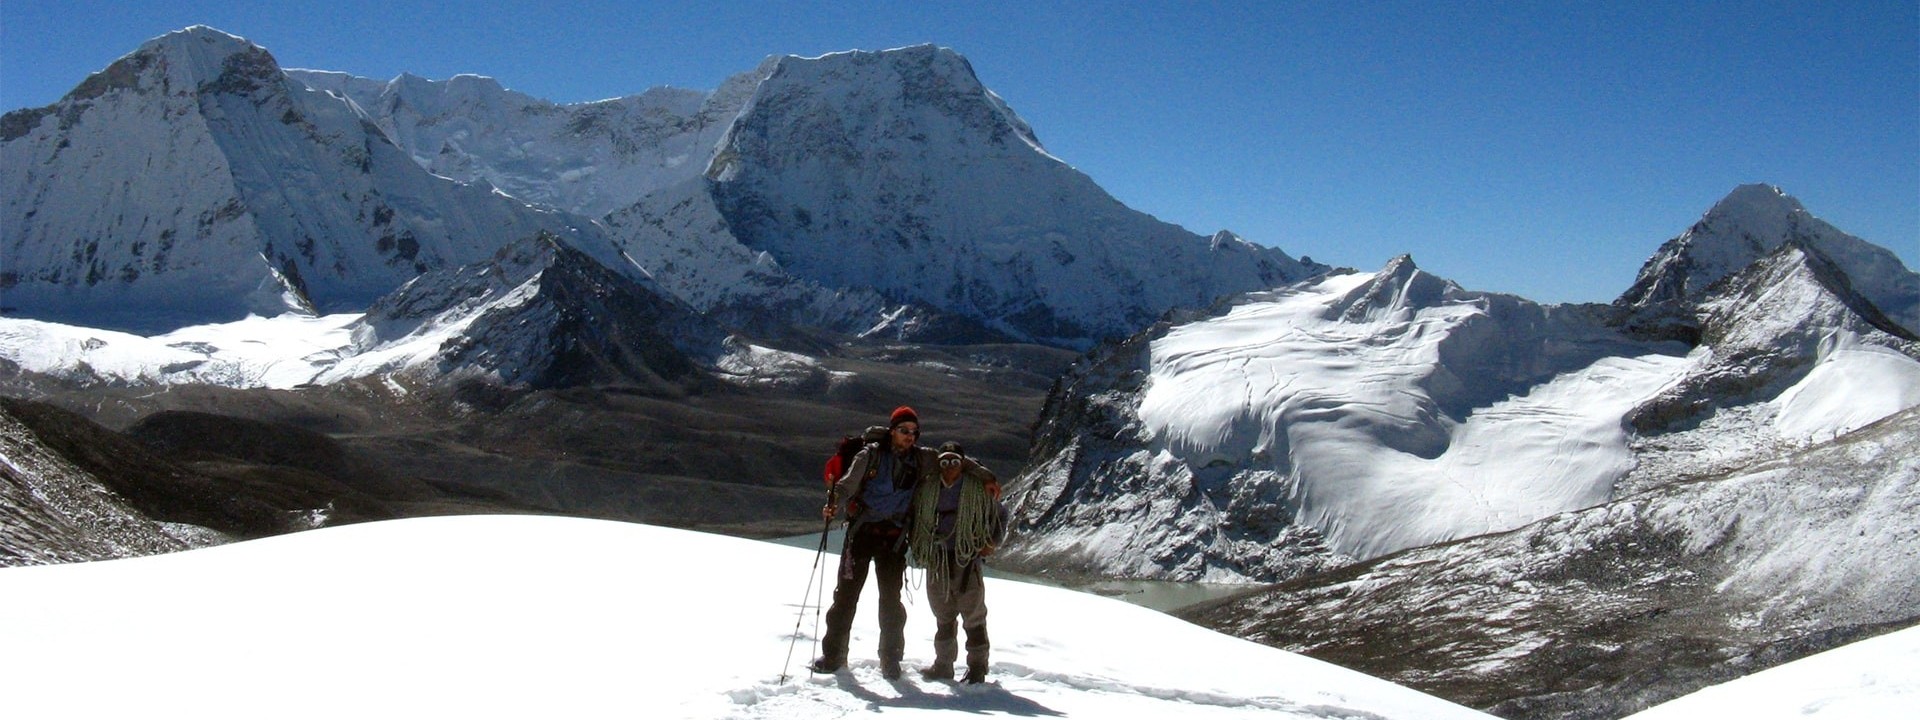 Sherpani Col Pass Trek - Makalu Adventure